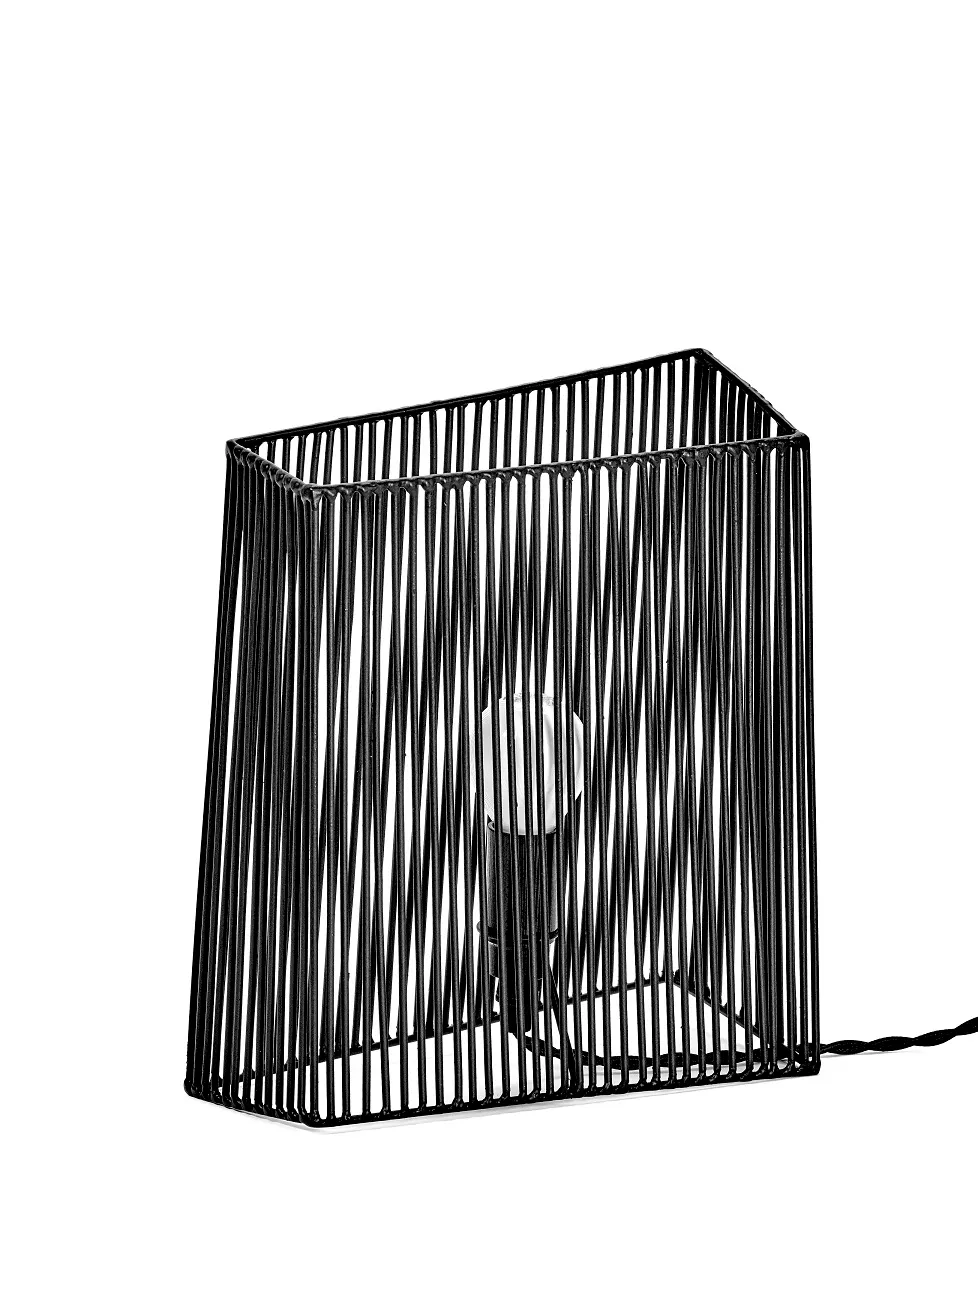 Wall/Table Lamp L Ombre Black L 23.5 W 21 H 26CM by Antonino Sciortino